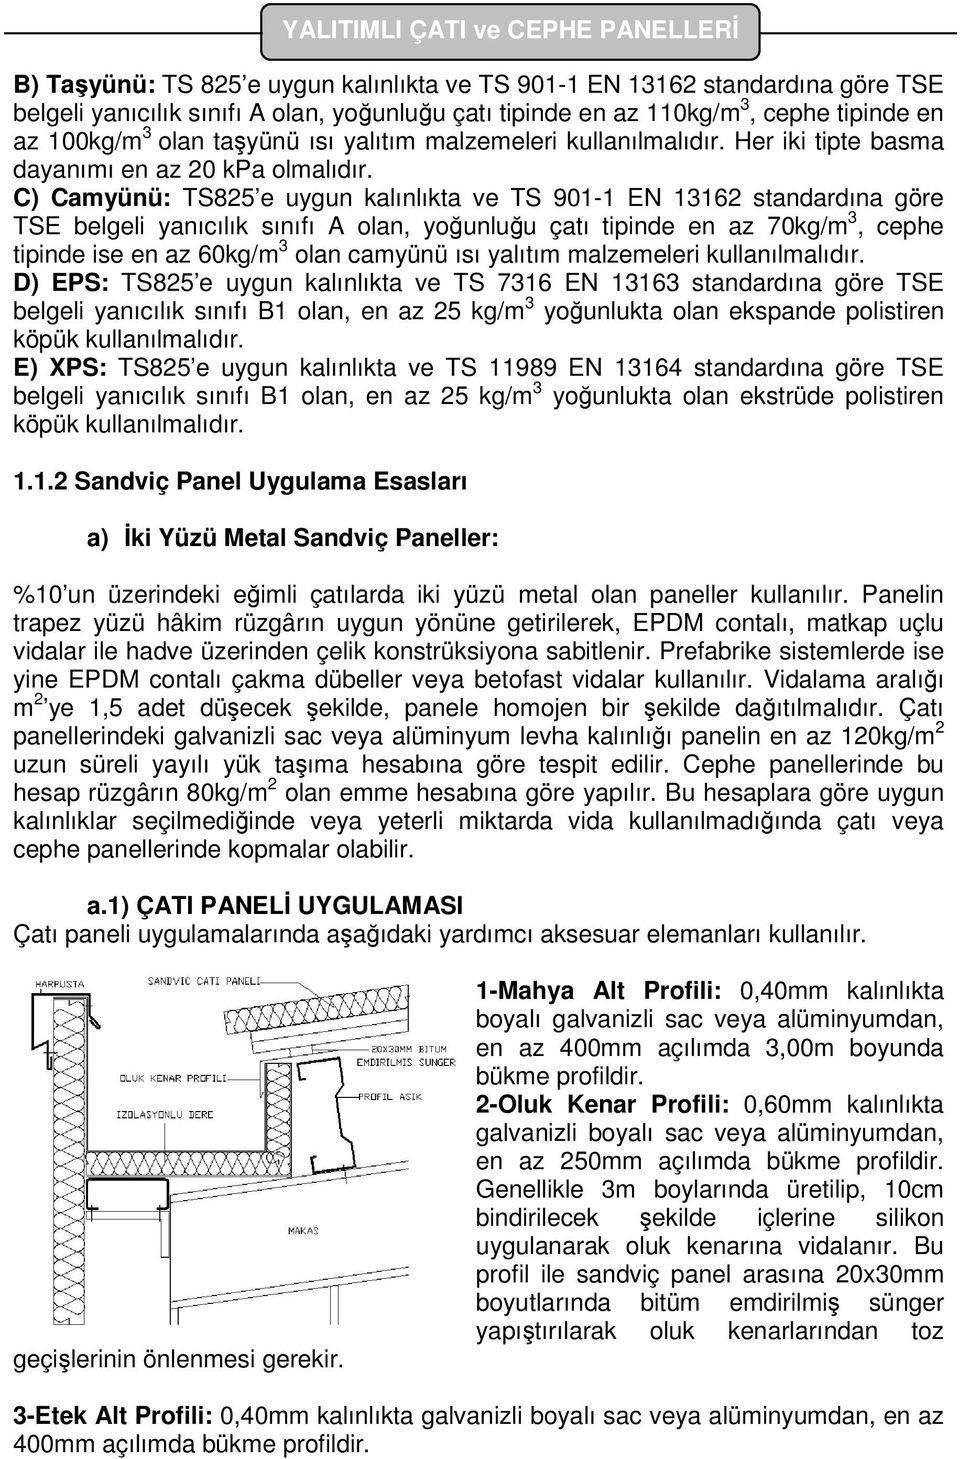 C) Camyünü: TS825 e uygun kalınlıkta ve TS 901-1 EN 13162 standardına göre TSE belgeli yanıcılık sınıfı A olan, yoğunluğu çatı tipinde en az 70kg/m 3, cephe tipinde ise en az 60kg/m 3 olan camyünü